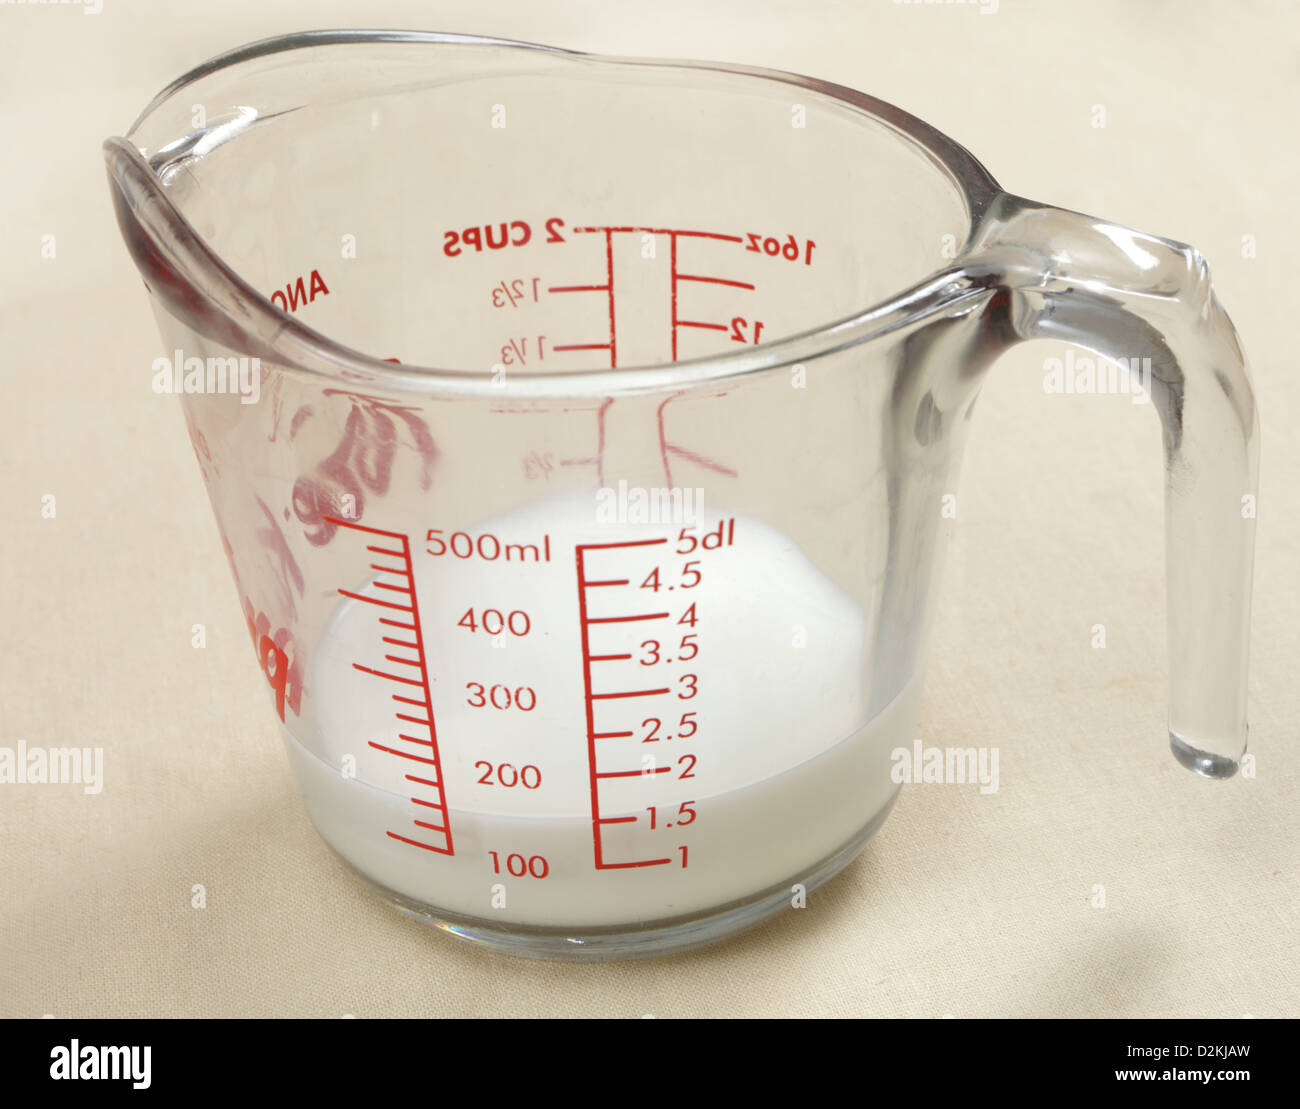 Чашка воды в мл. 3/4 Стакана в граммах. Молоко 150 миллилитров это. Молоко в мерном стакане. 100 Гр молока в мл.